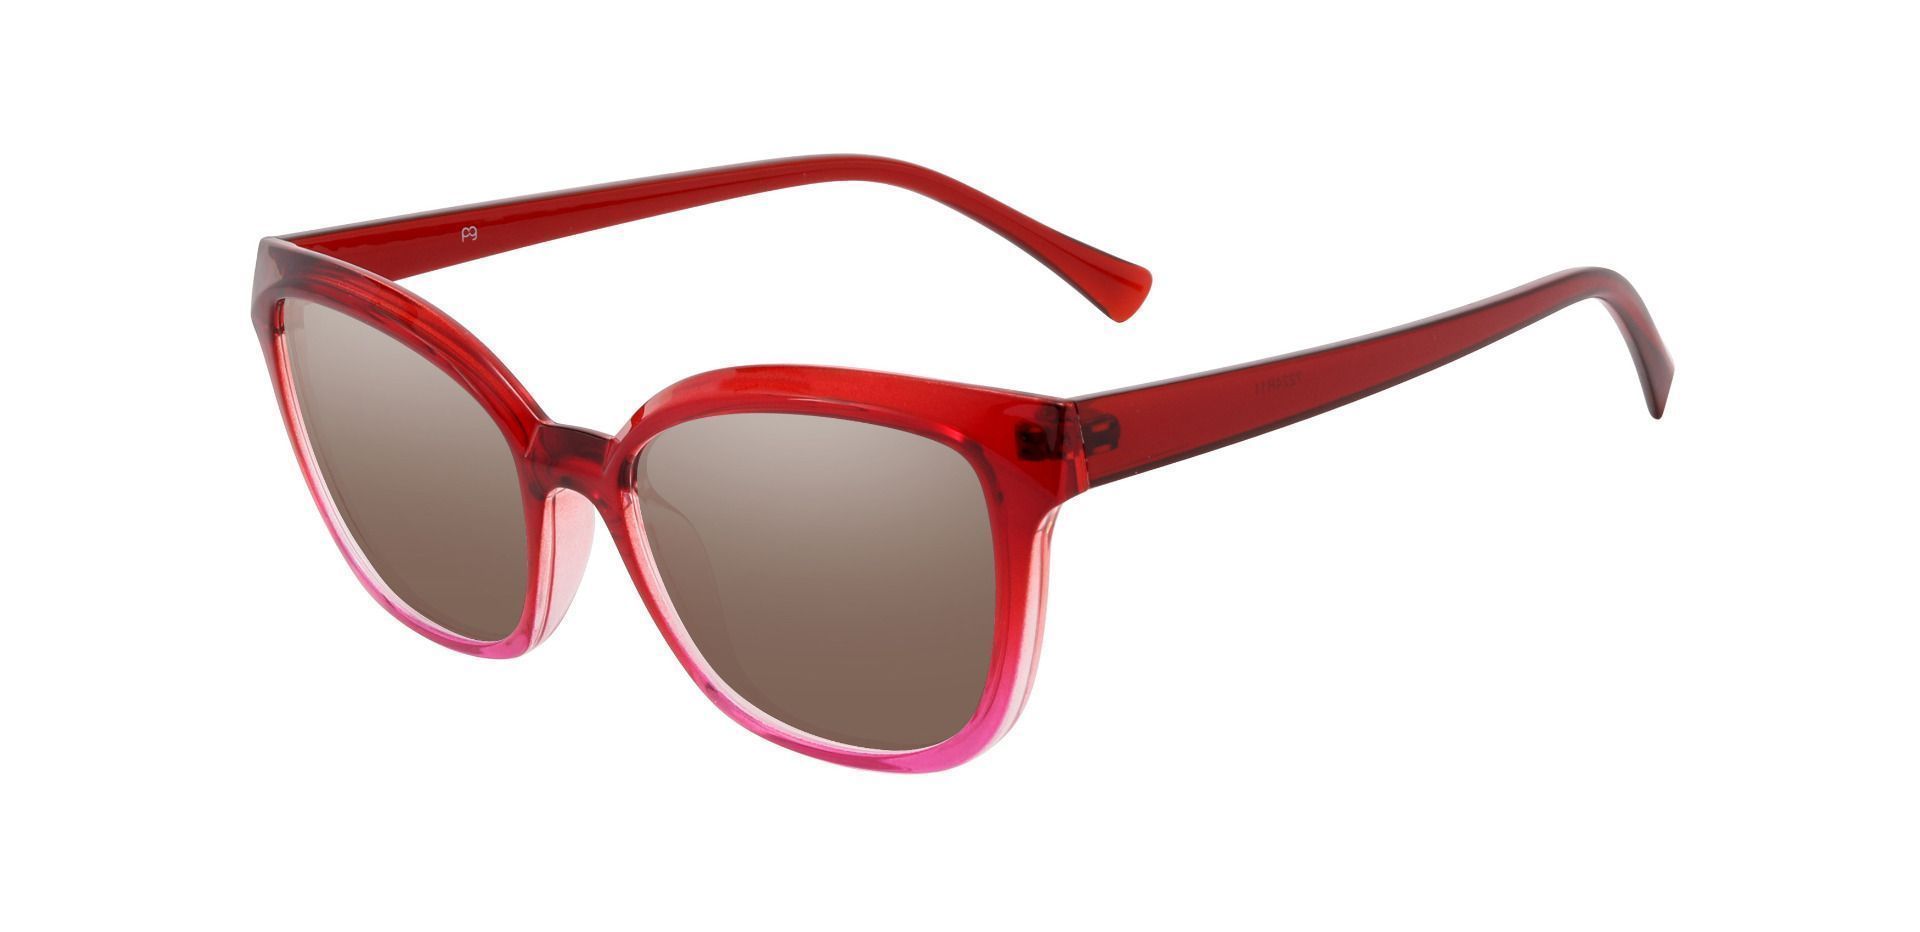 Nashville Cat Eye Prescription Sunglasses - Red Frame With Brown Lenses